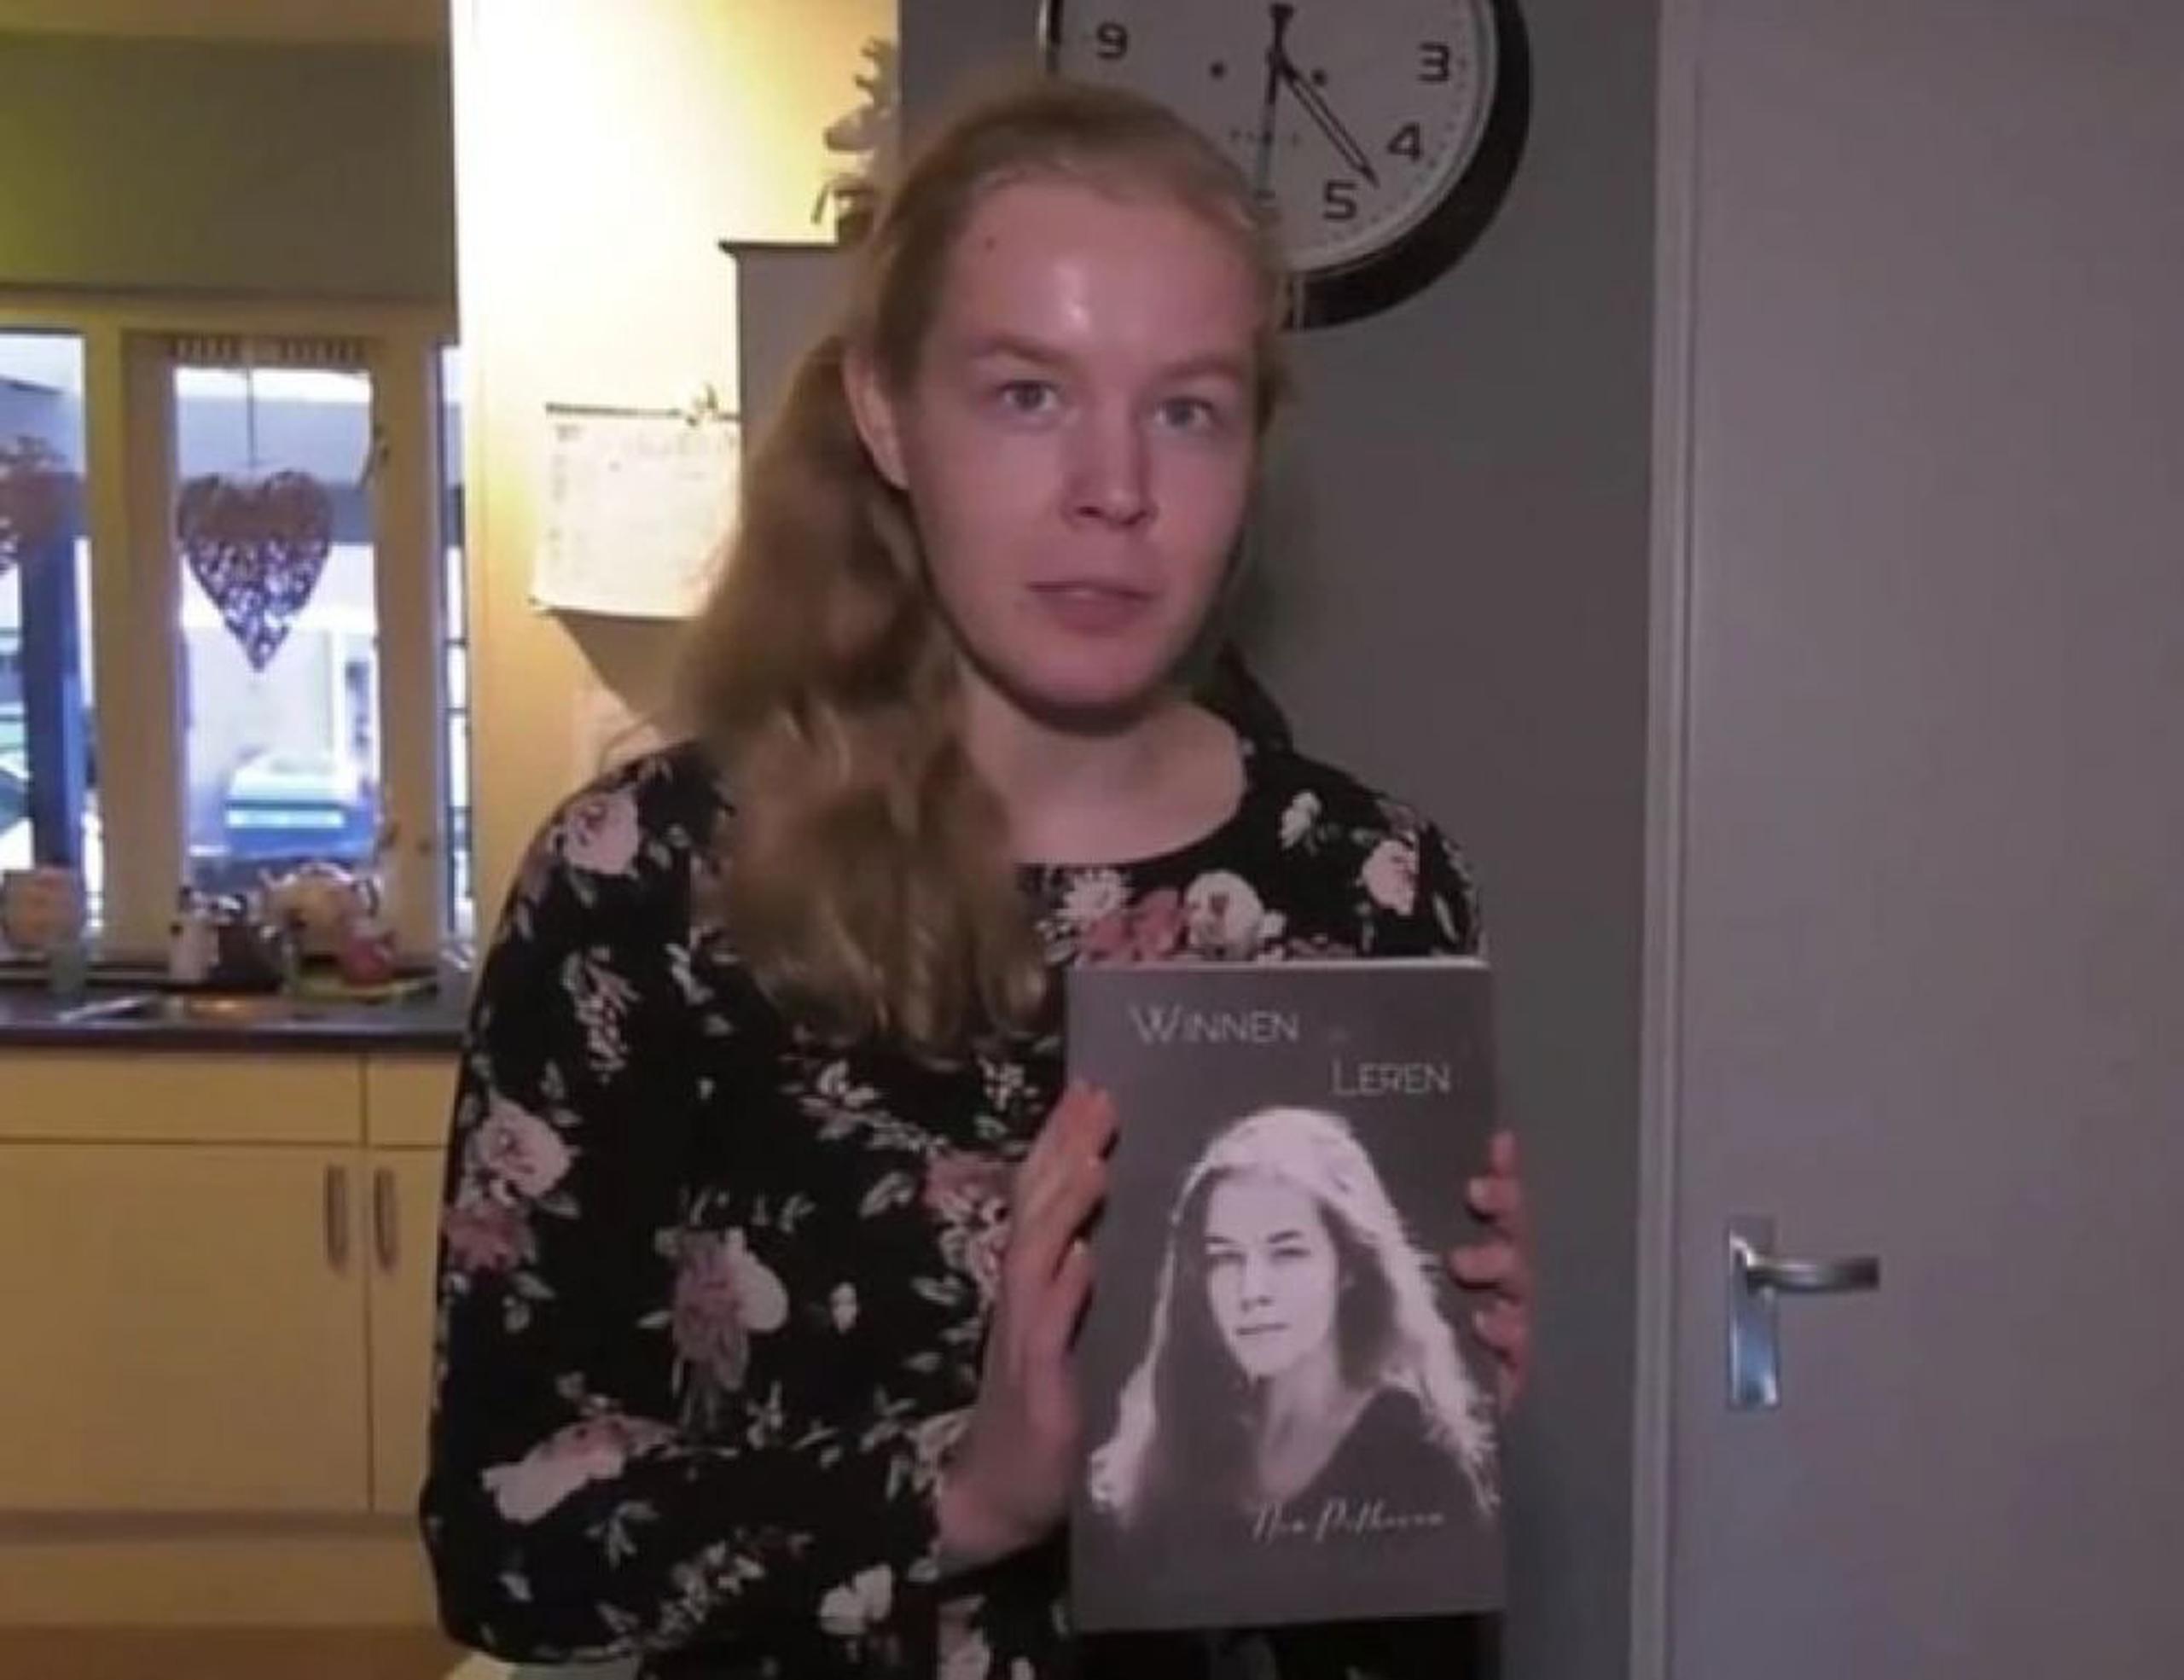 La joven publicó una autobiografía en la que narró los traumas que la llevaron a tomar su decisión. (Facebook)